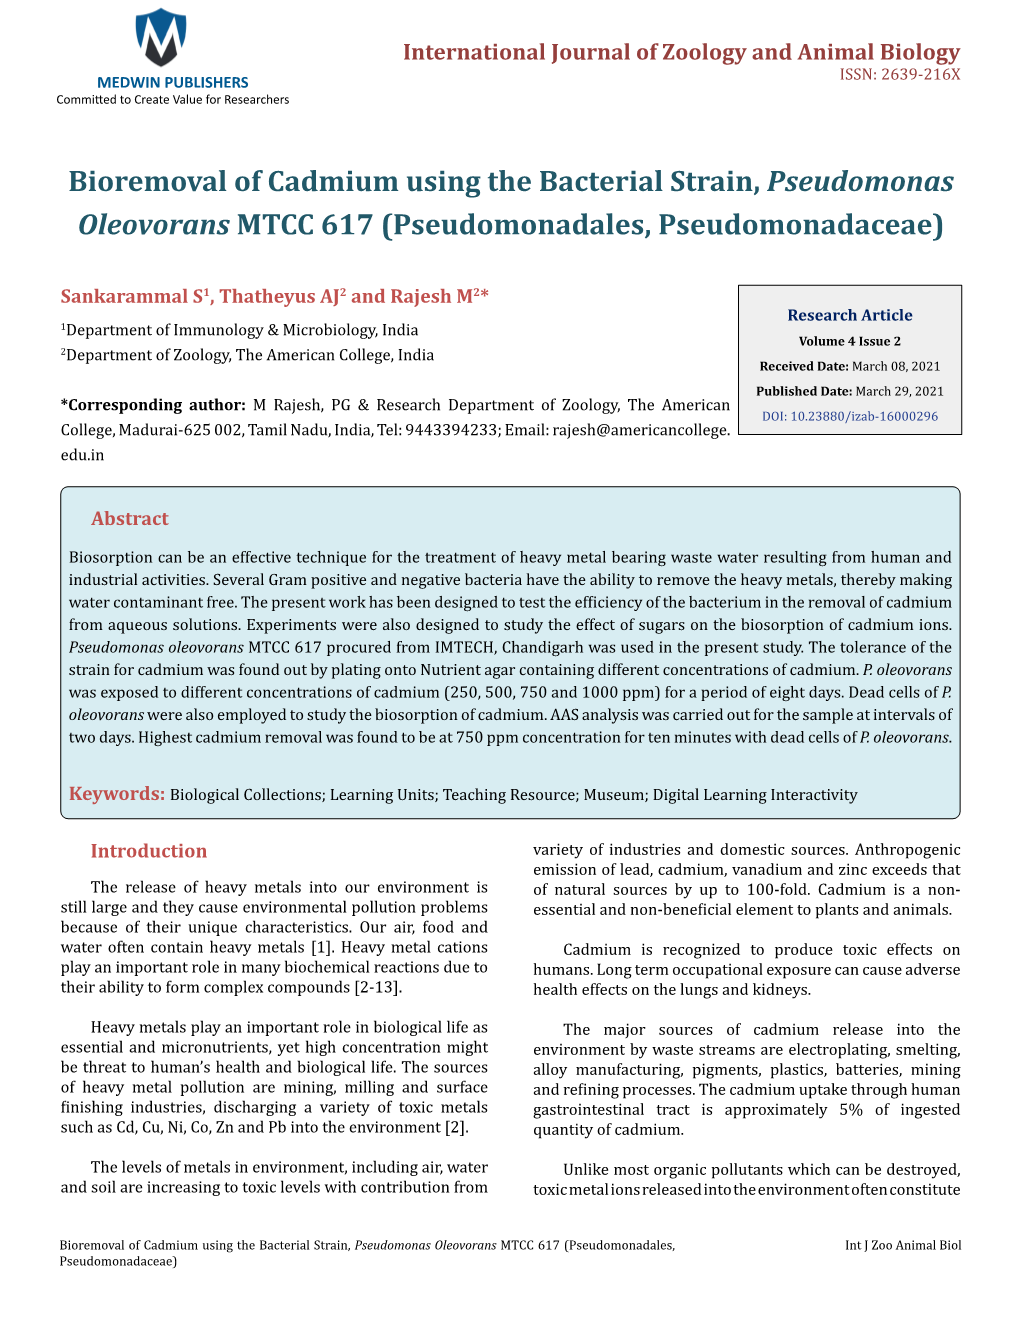 Bioremoval of Cadmium Using the Bacterial Strain, Pseudomonas Oleovorans MTCC 617 (Pseudomonadales, Pseudomonadaceae)